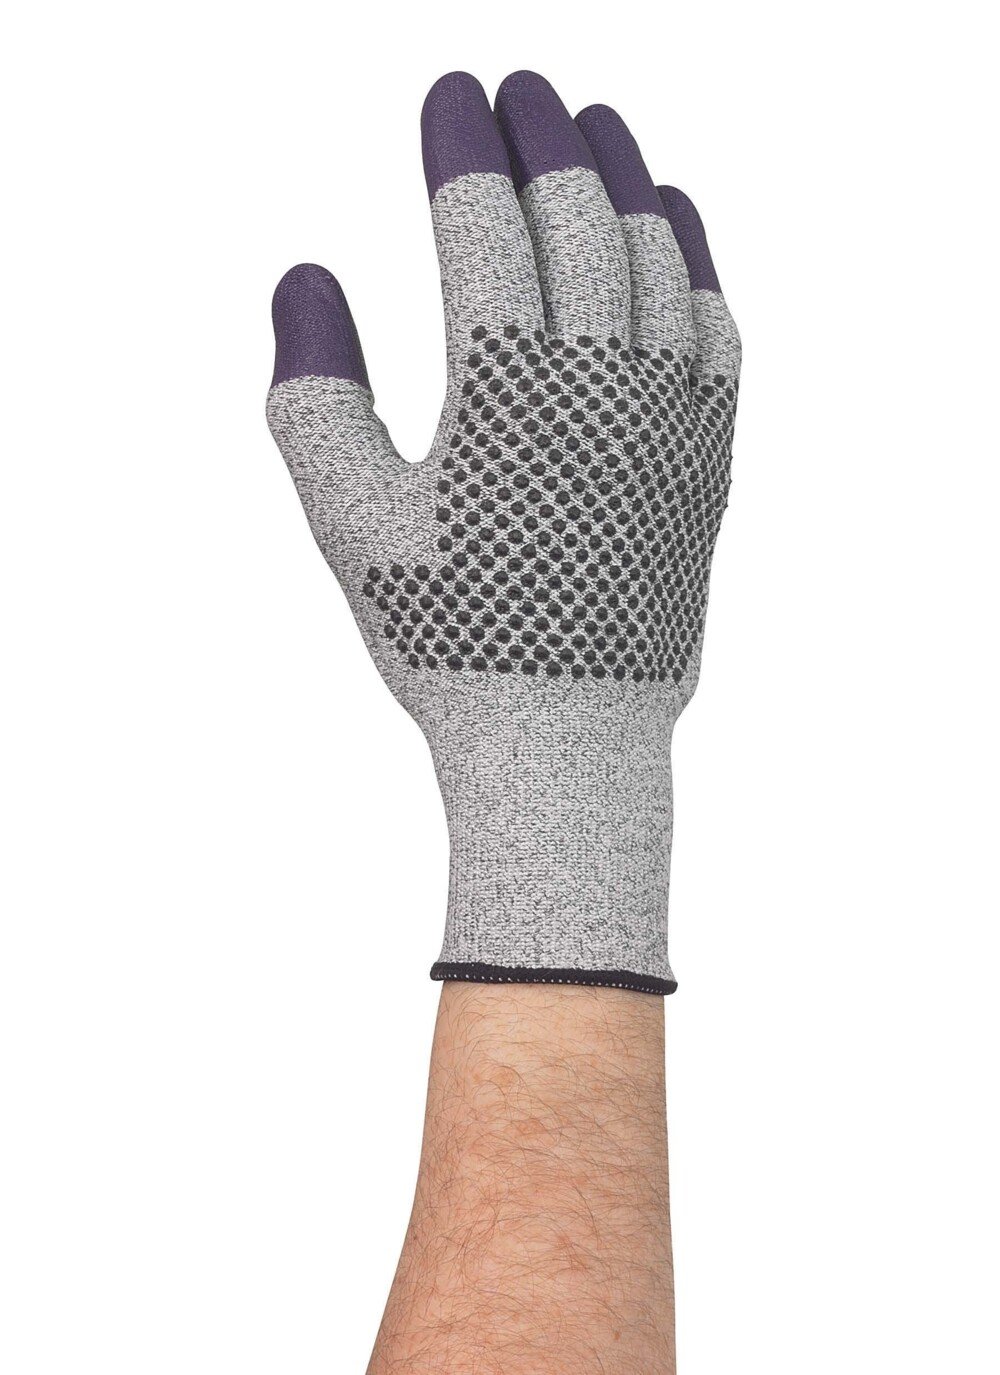 KleenGuard® G60 Endurapro™ Dual Grip™ violette Nitrilhandschuhe 97433 Grau und Violett, 10, 1x12 (12 Handschuhe) - 97433